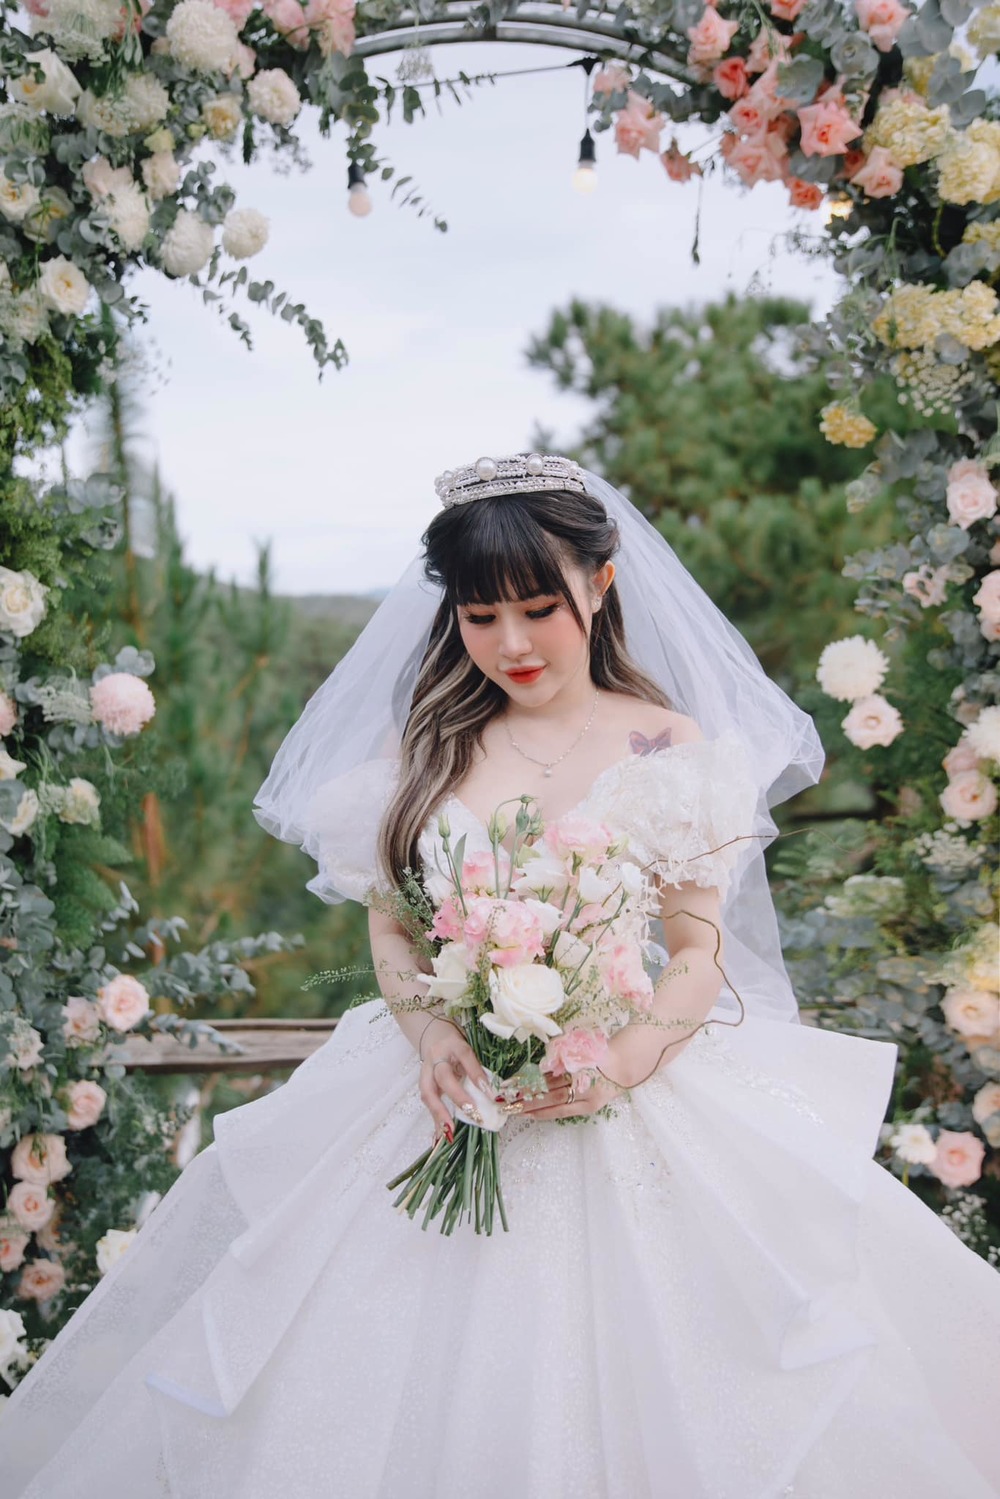  
Cô dâu Trần My xinh đẹp trong chiếc váy cưới lấp lánh, khoe hình xăm trên vai. (Ảnh: FB Trần My)